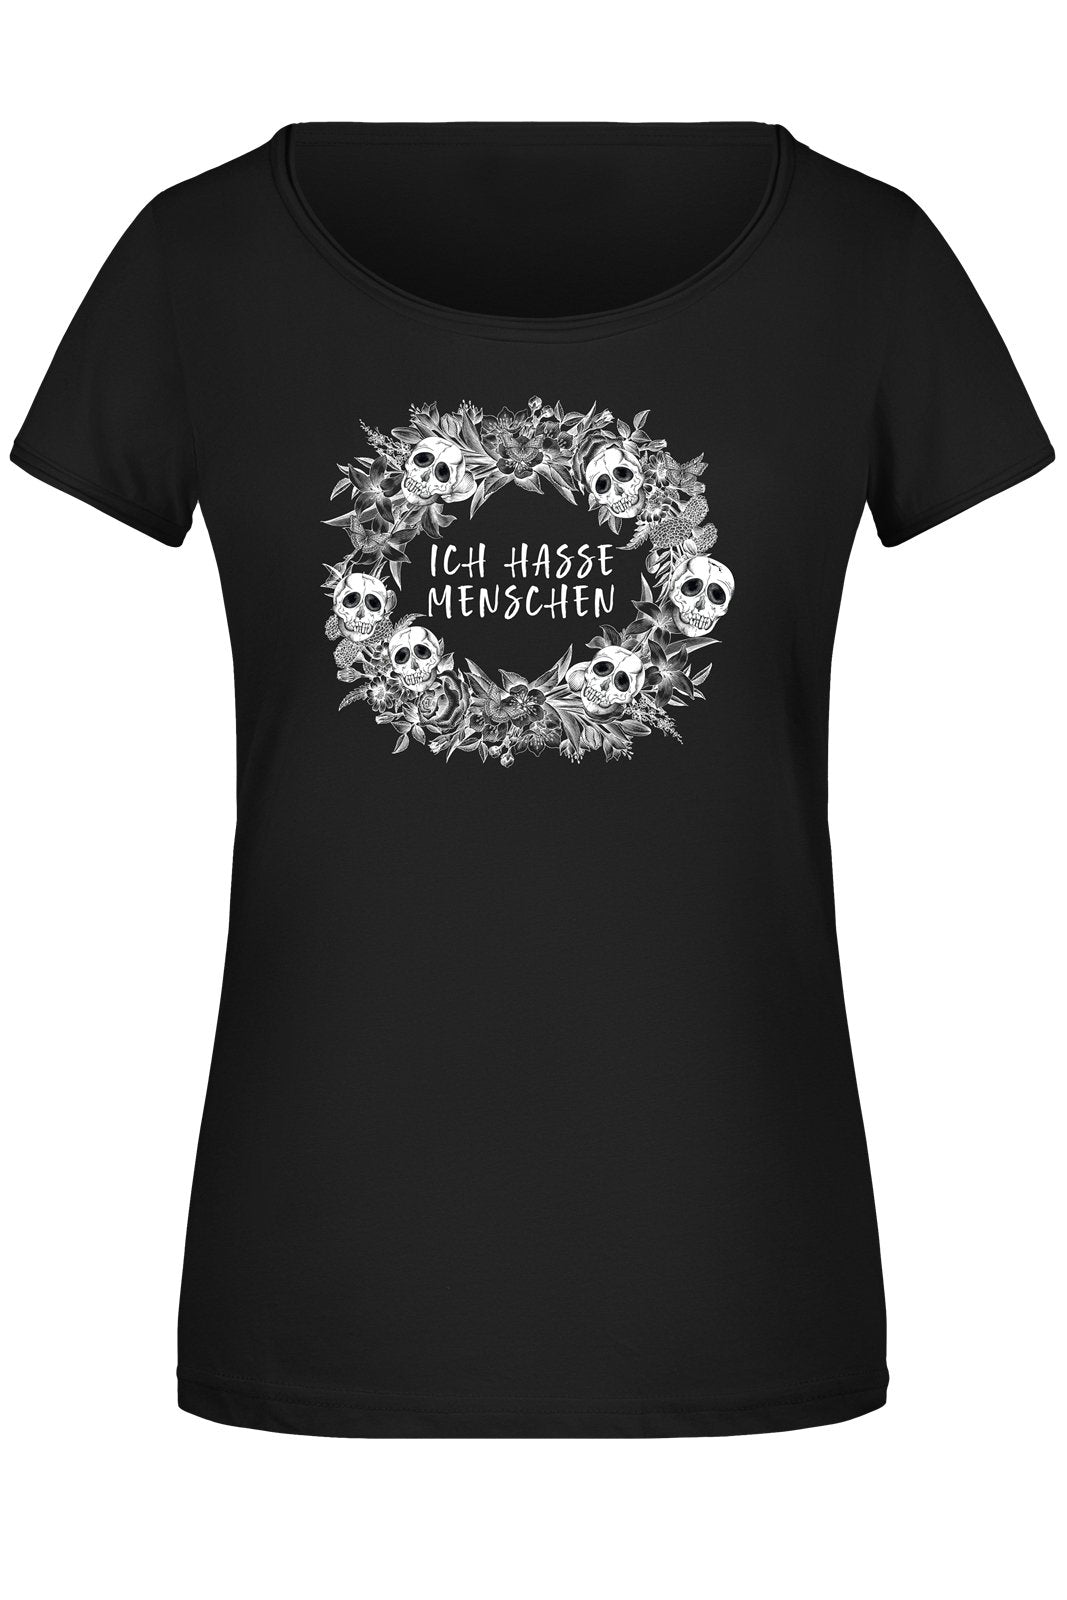 Bild: T-Shirt Damen - Ich hasse Menschen - Skull Statement Geschenkidee